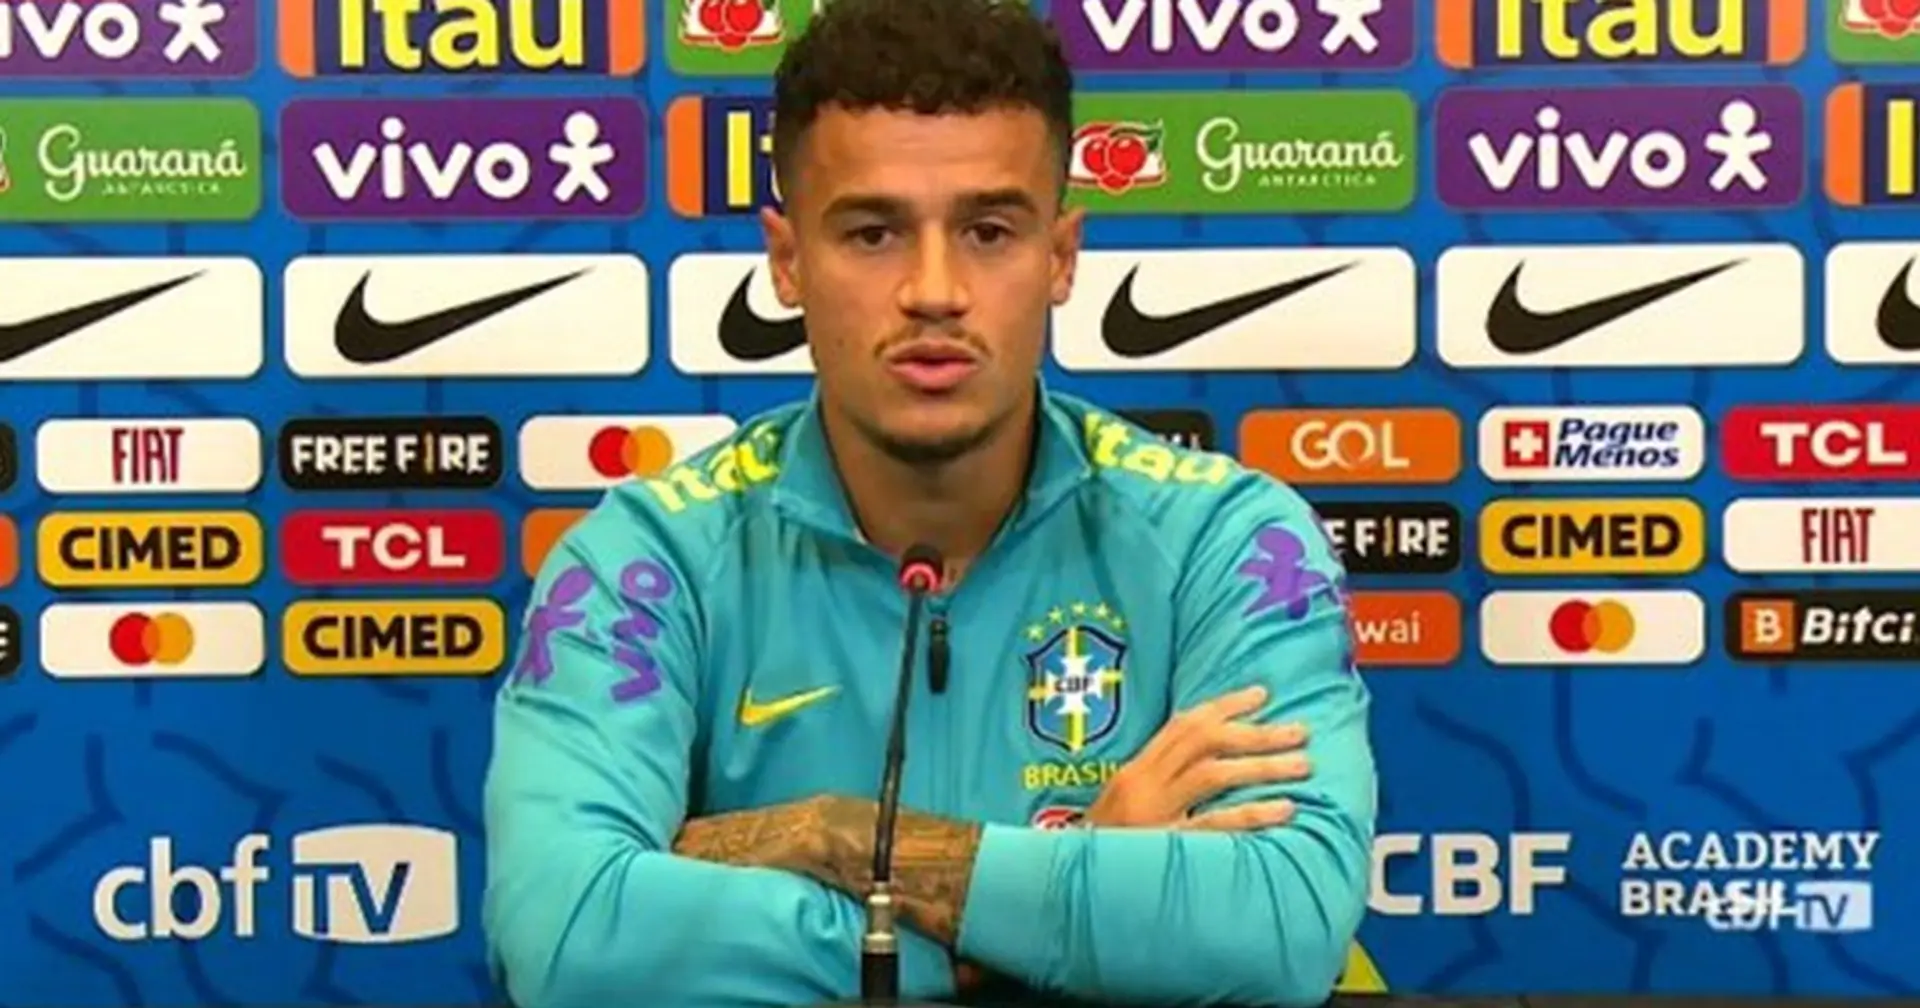 Coutinho réagit à la rumeur selon laquelle il aurait refusé d'entrer sur le terrain contre le Celta